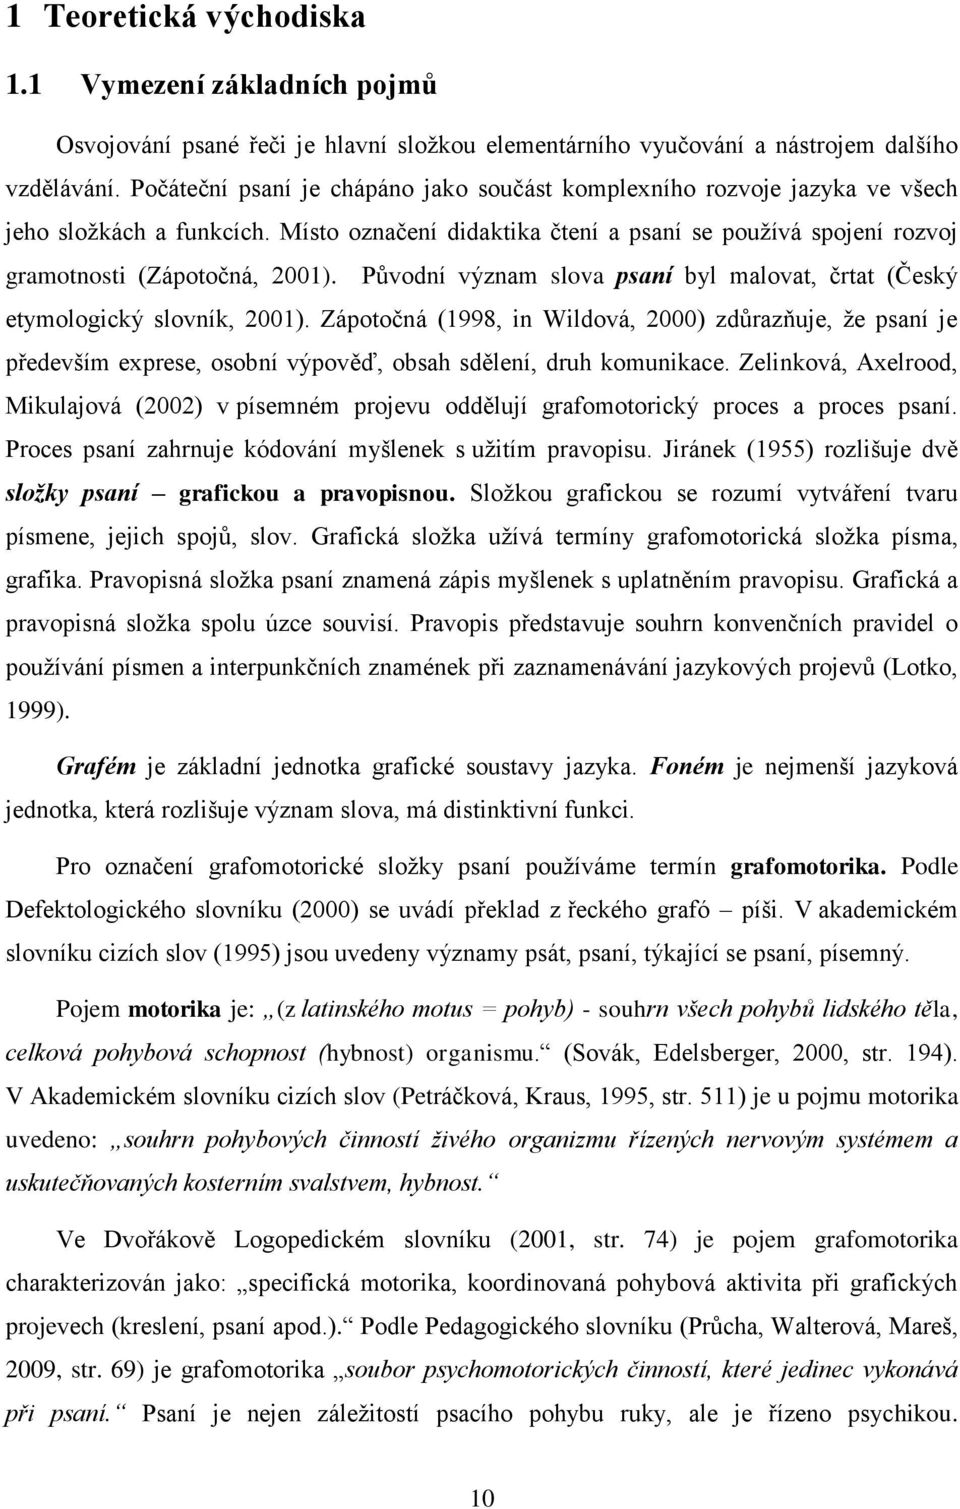 Původní význam slova psaní byl malovat, črtat (Český etymologický slovník, 2001).